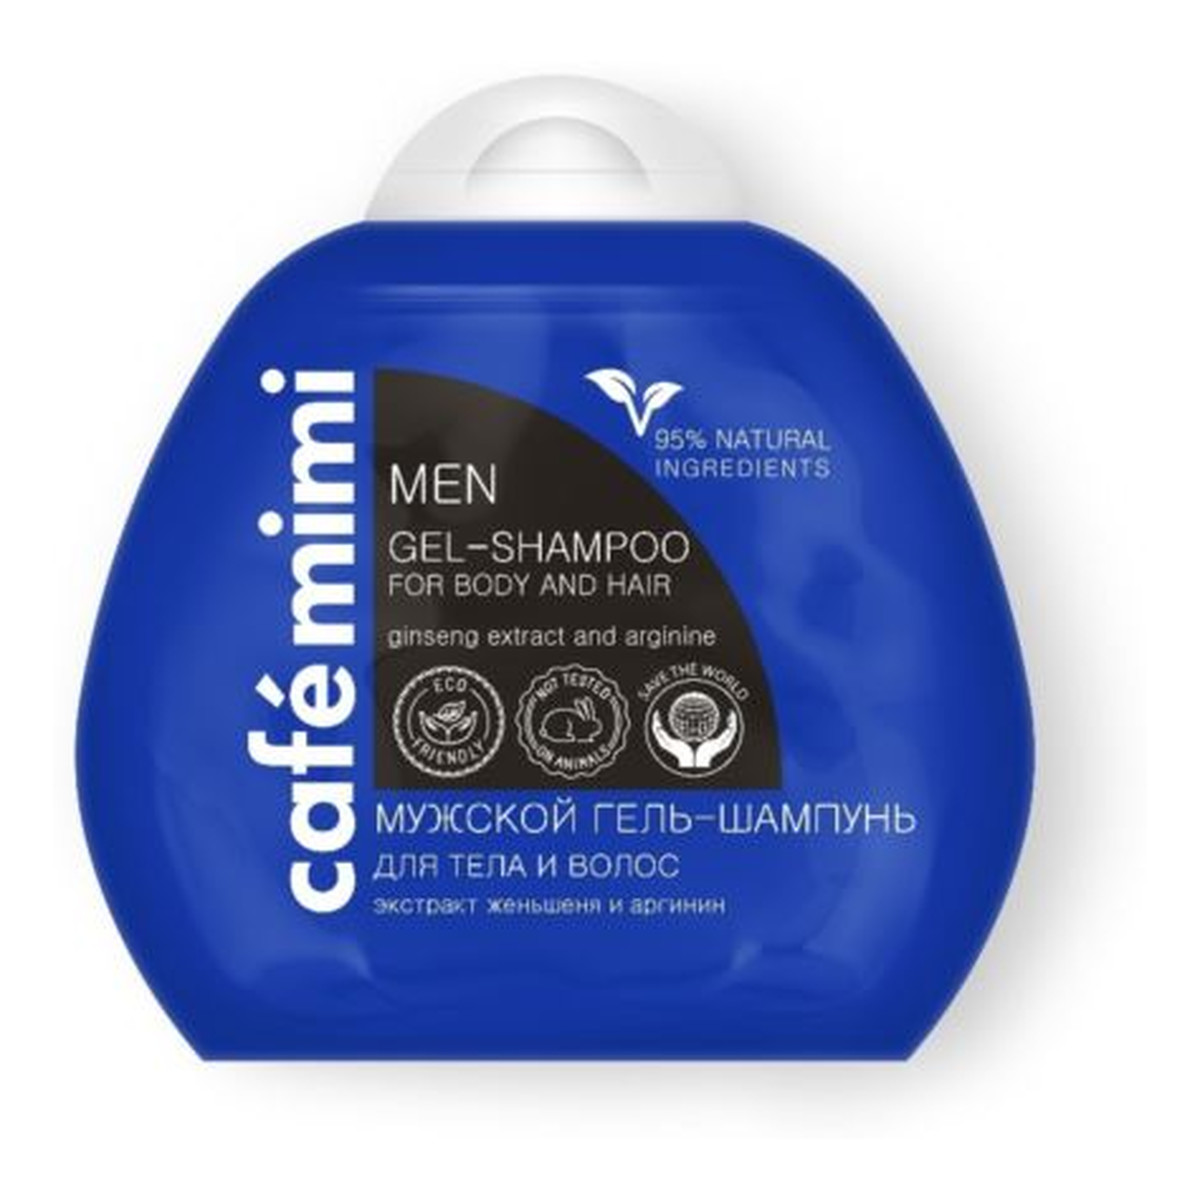 Le Cafe de Beaute Kafe Krasoty Cafe mimi Żel - szampon do ciała i włosów dla mężczyzn - ekstrakt żeń szenia, arganina, D-panthenol, - 95% składników naturalnych 100ml